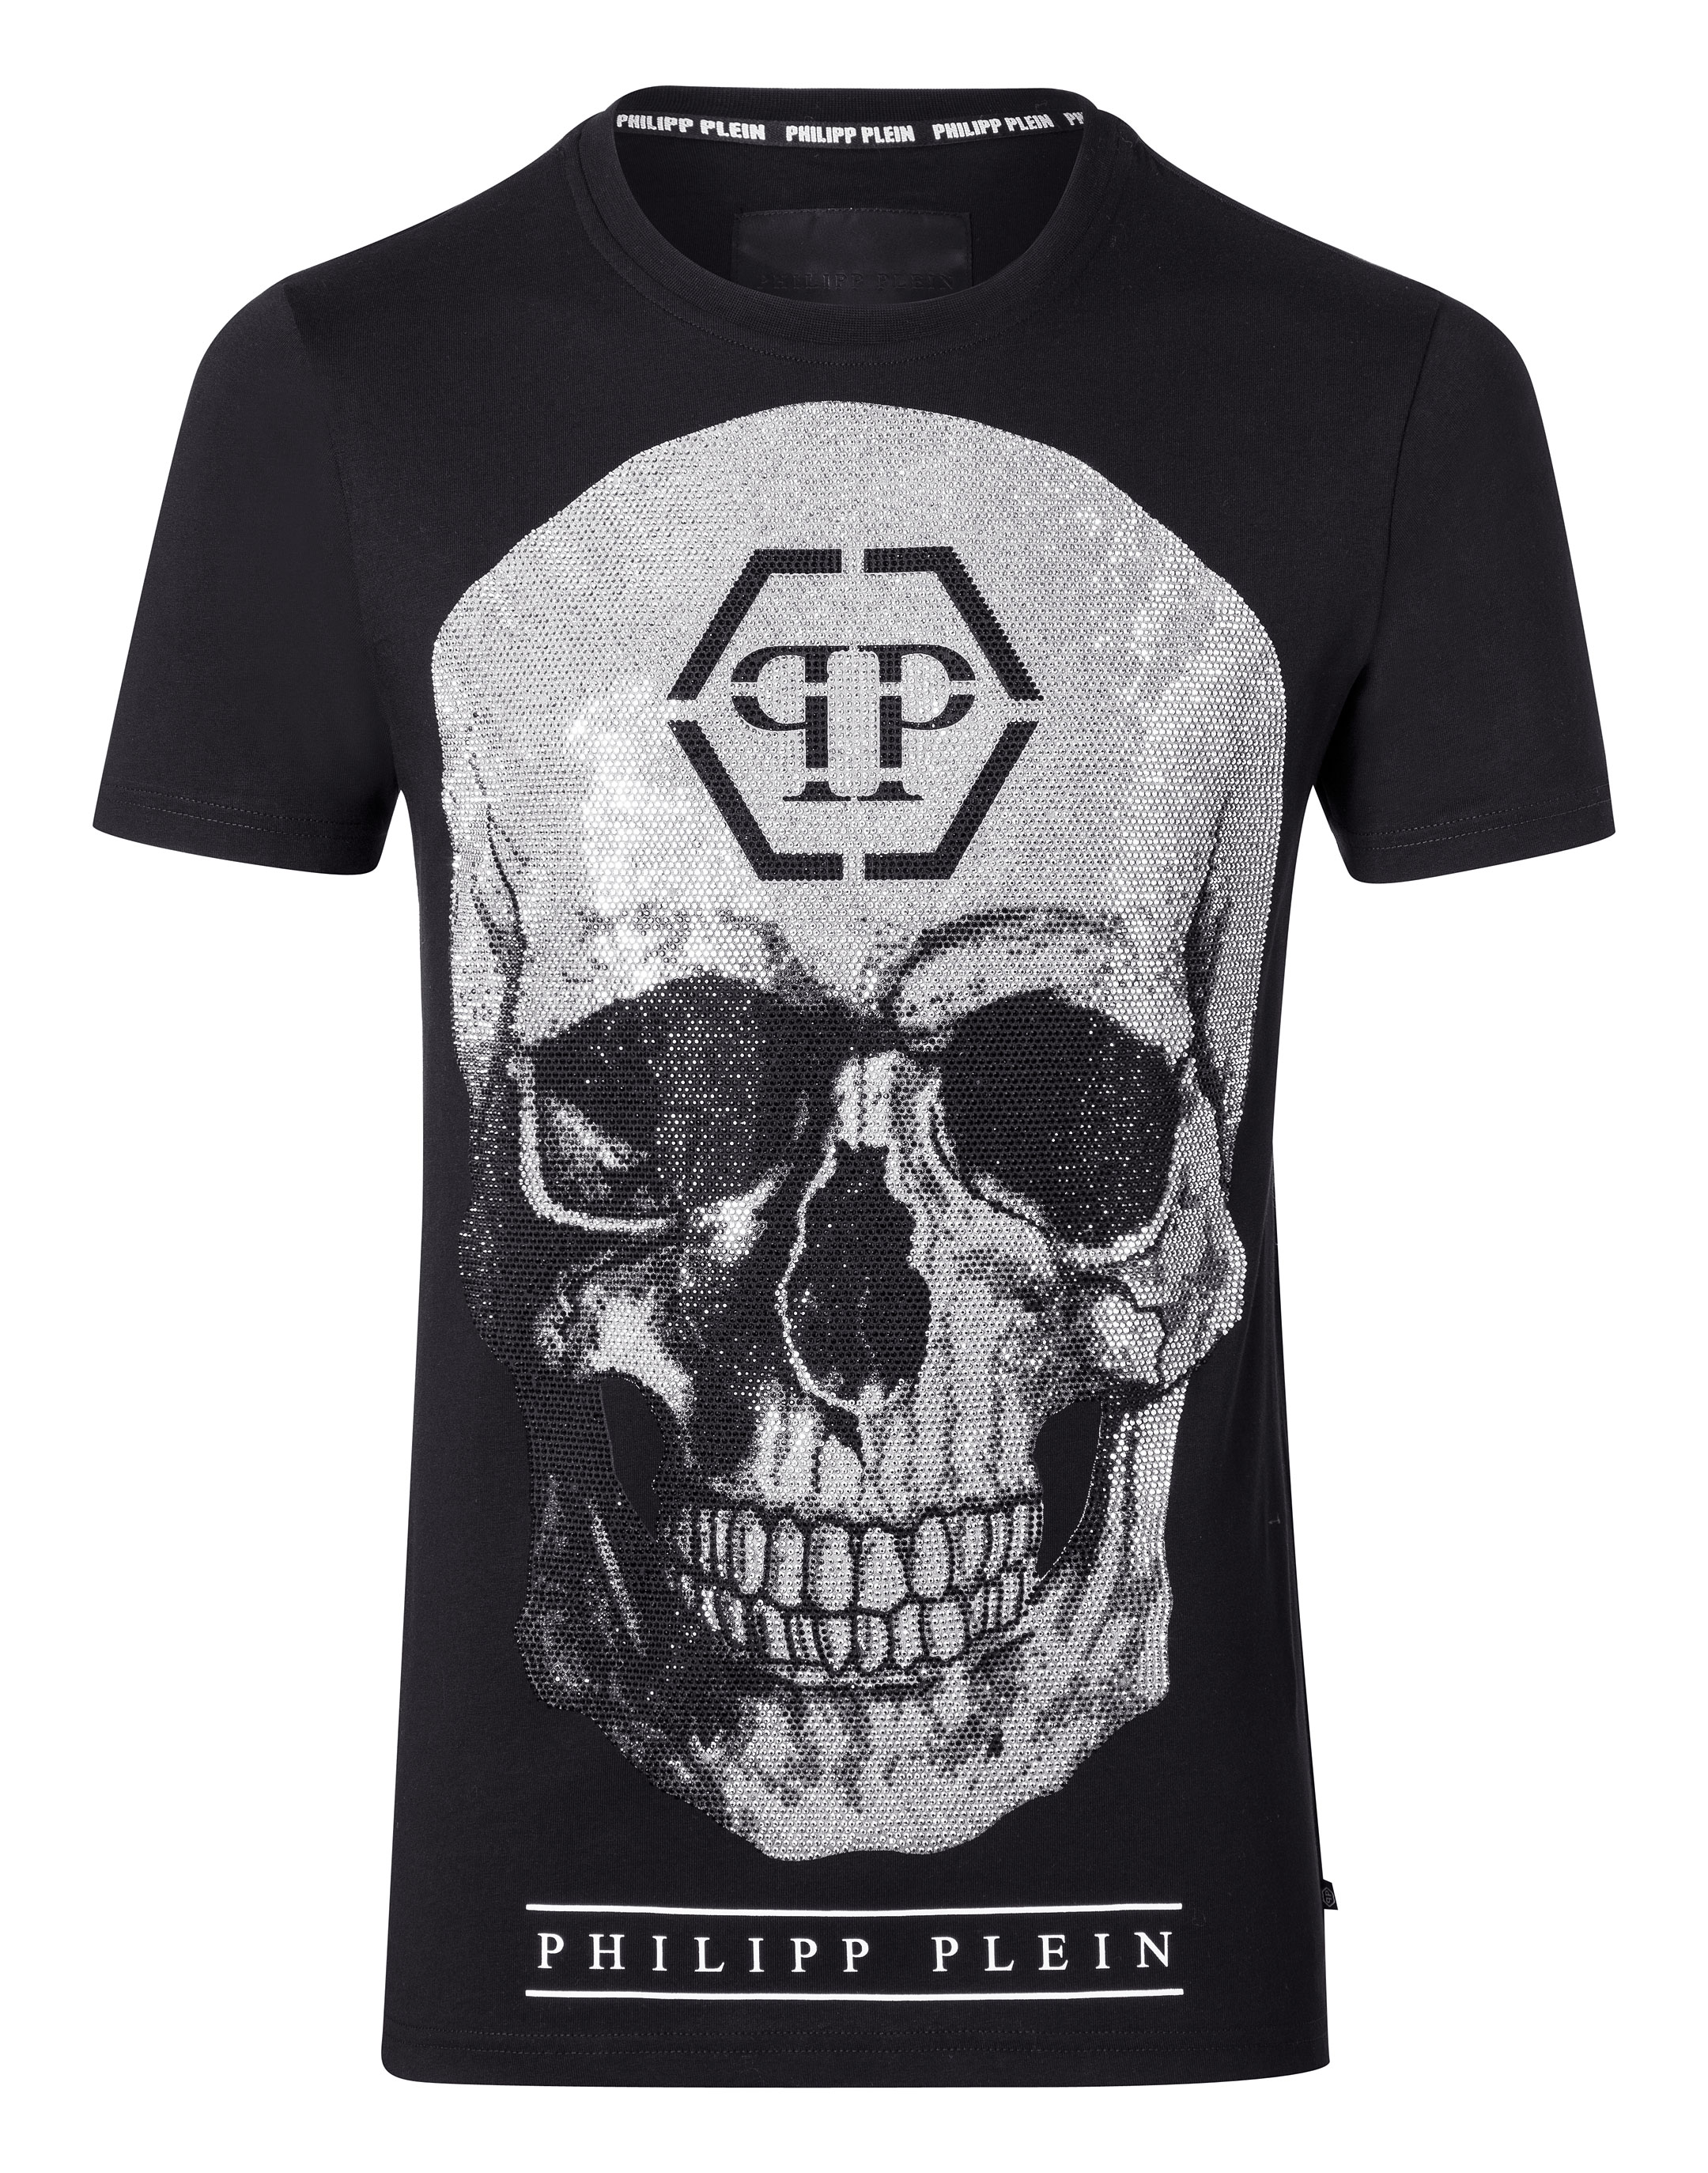 Buy pp t shirt - 54% OFF!